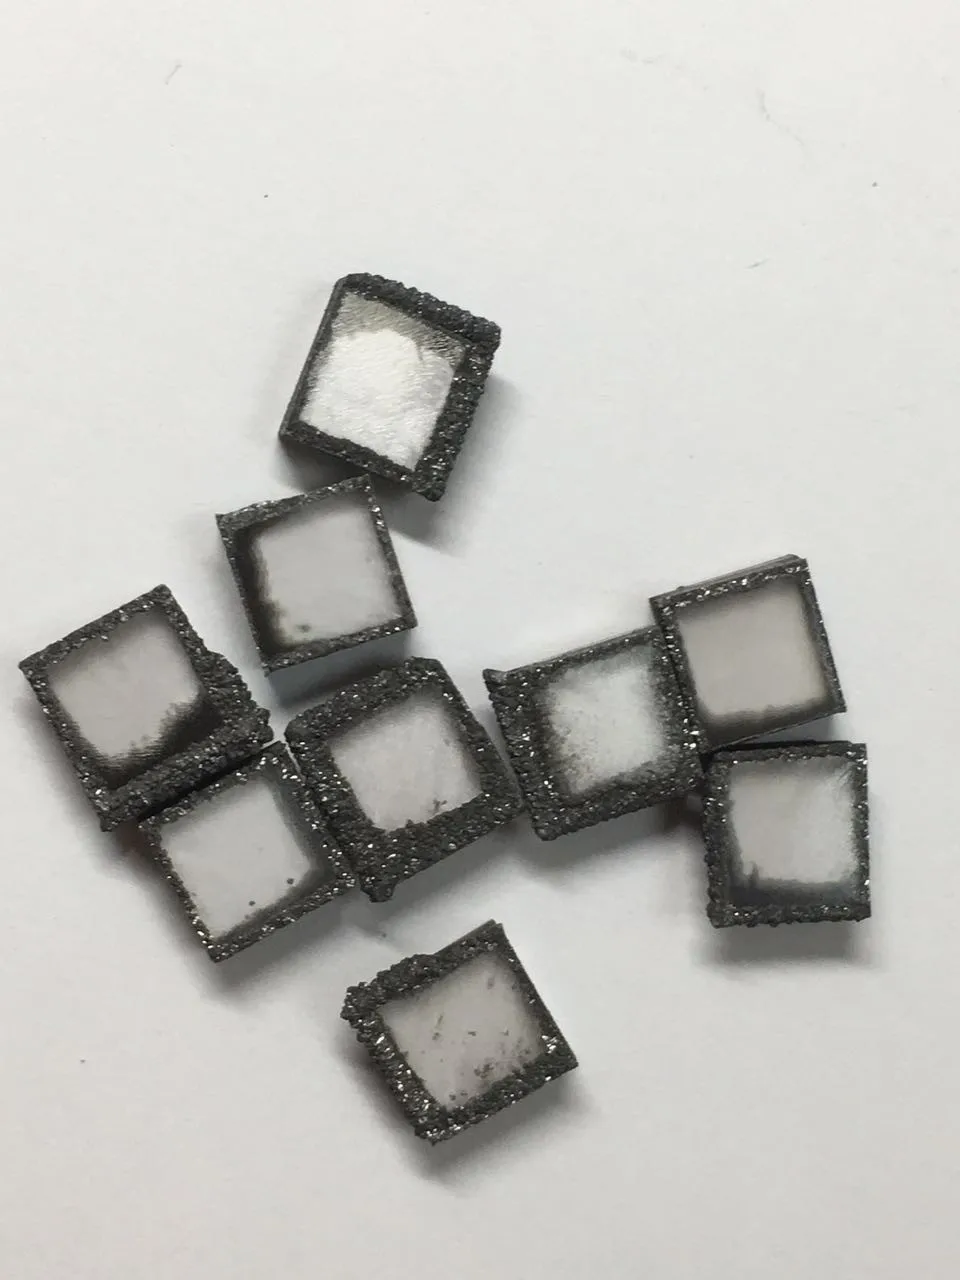 Tiny diamond seed crystals